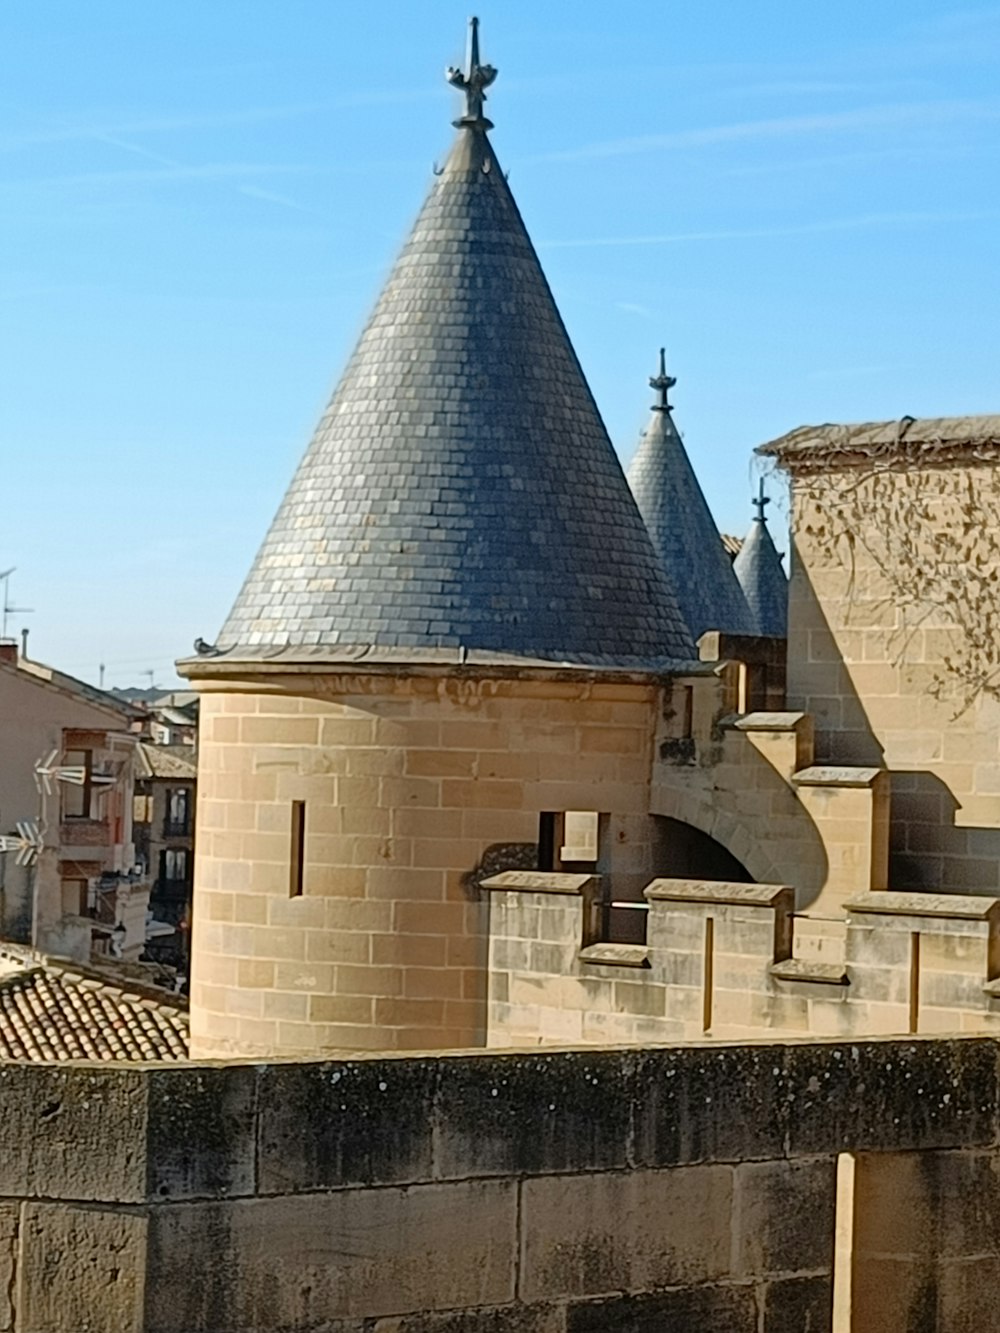 une vue d’un château avec une tour de l’horloge